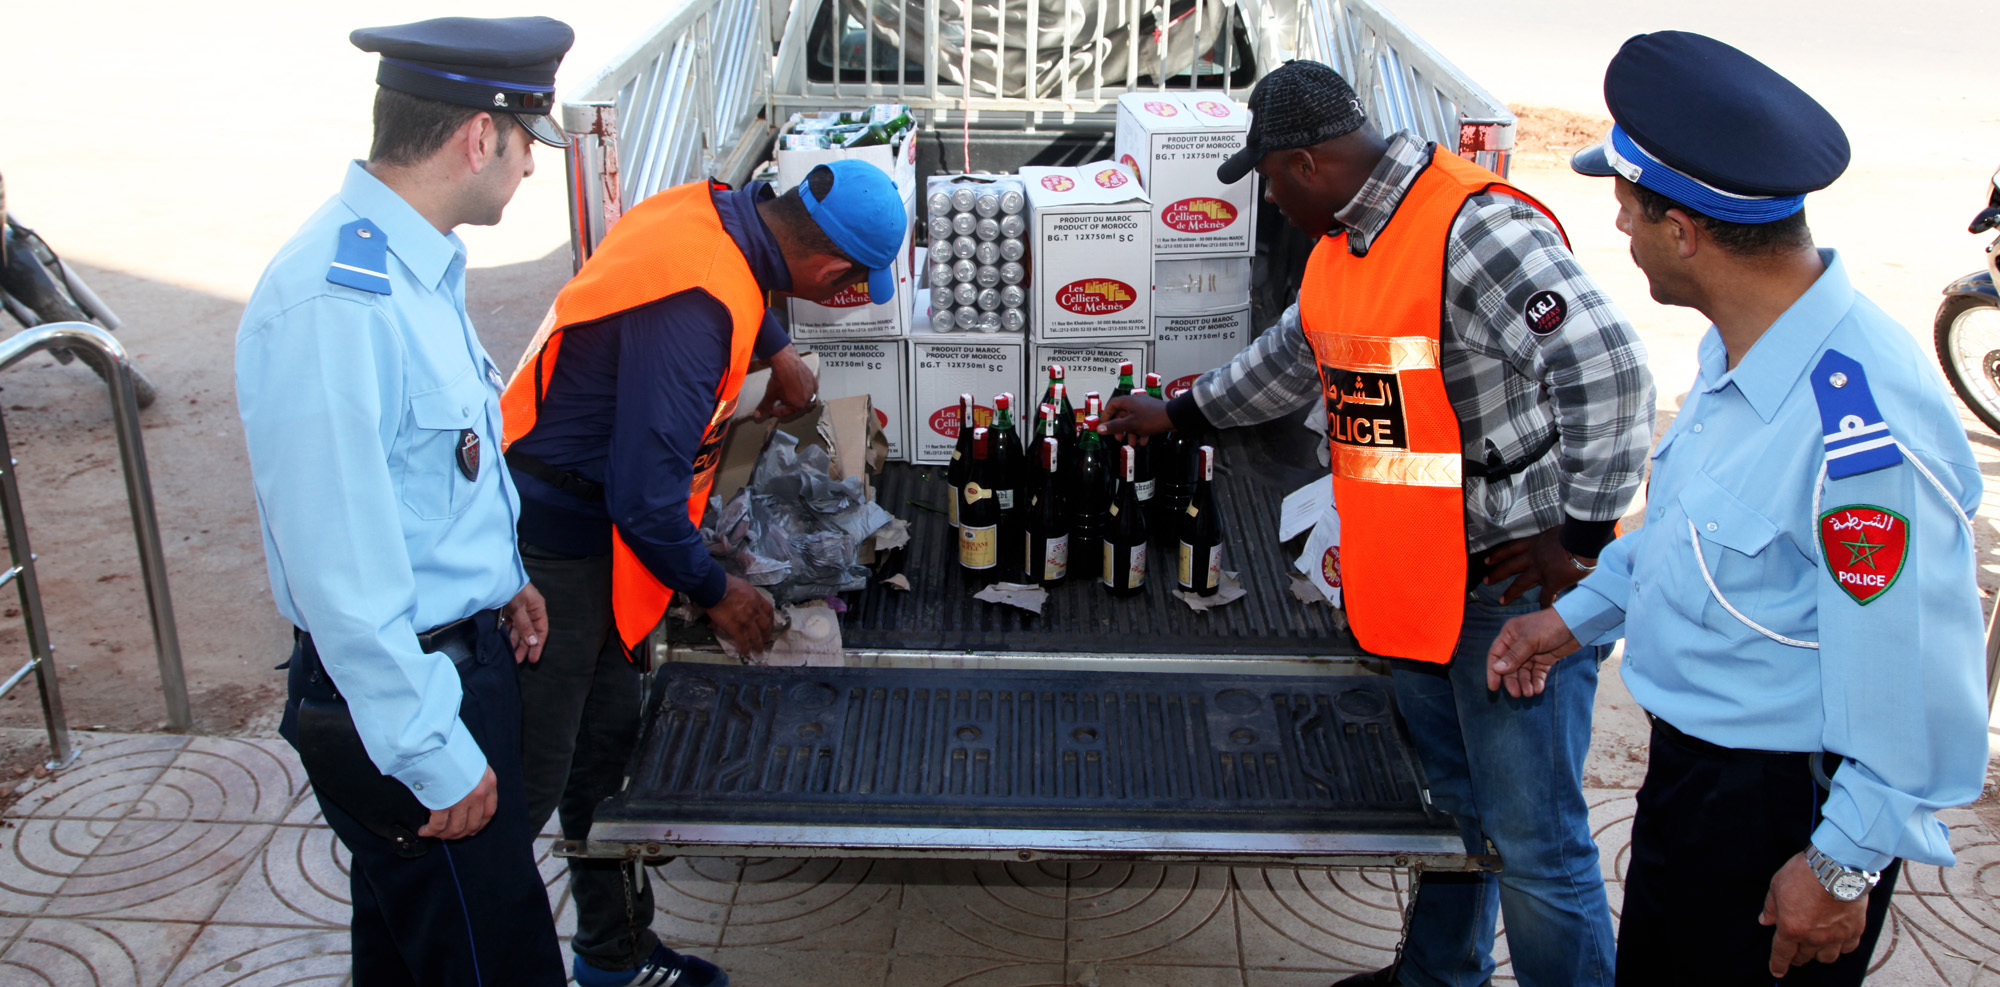 مبيعات قياسية للخُمور عشية رأس السنة والأمن يطارد المواطنين قرب محلات ‘الگرابة’ لإتلاف مقتنياتهم من النبيذ